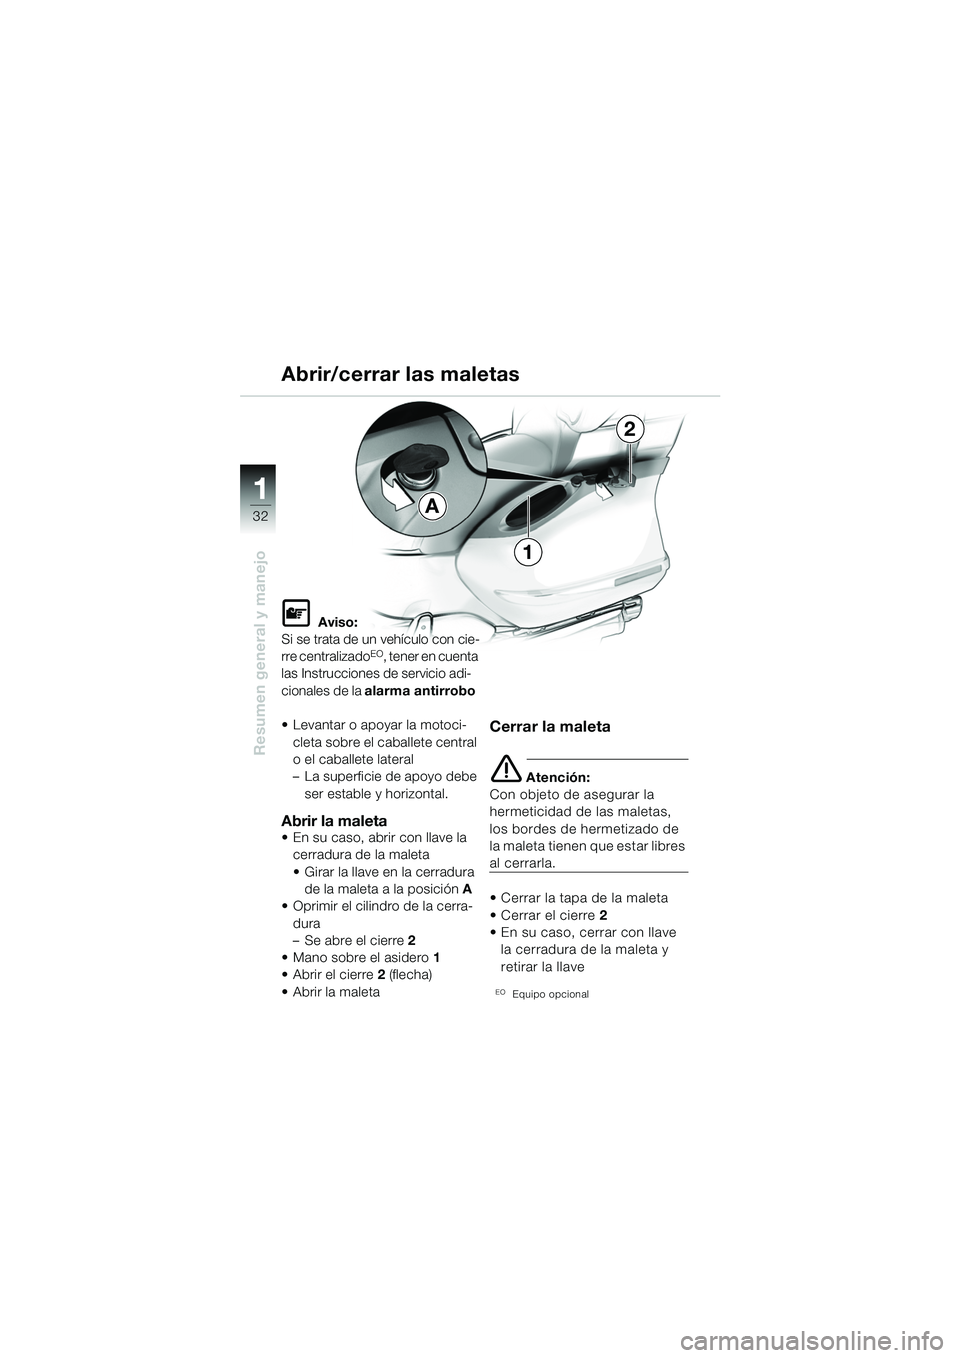 BMW MOTORRAD K 1200 LT 2005  Manual de instrucciones (in Spanish) 32
Resumen general y manejo
1A
1
2
Abrir/cerrar las maletas
L Aviso:
Si se trata de un vehículo con cie-
rre centralizado
EO, tener en cuenta 
las Instrucciones de servicio adi-
cionales de la  alarm